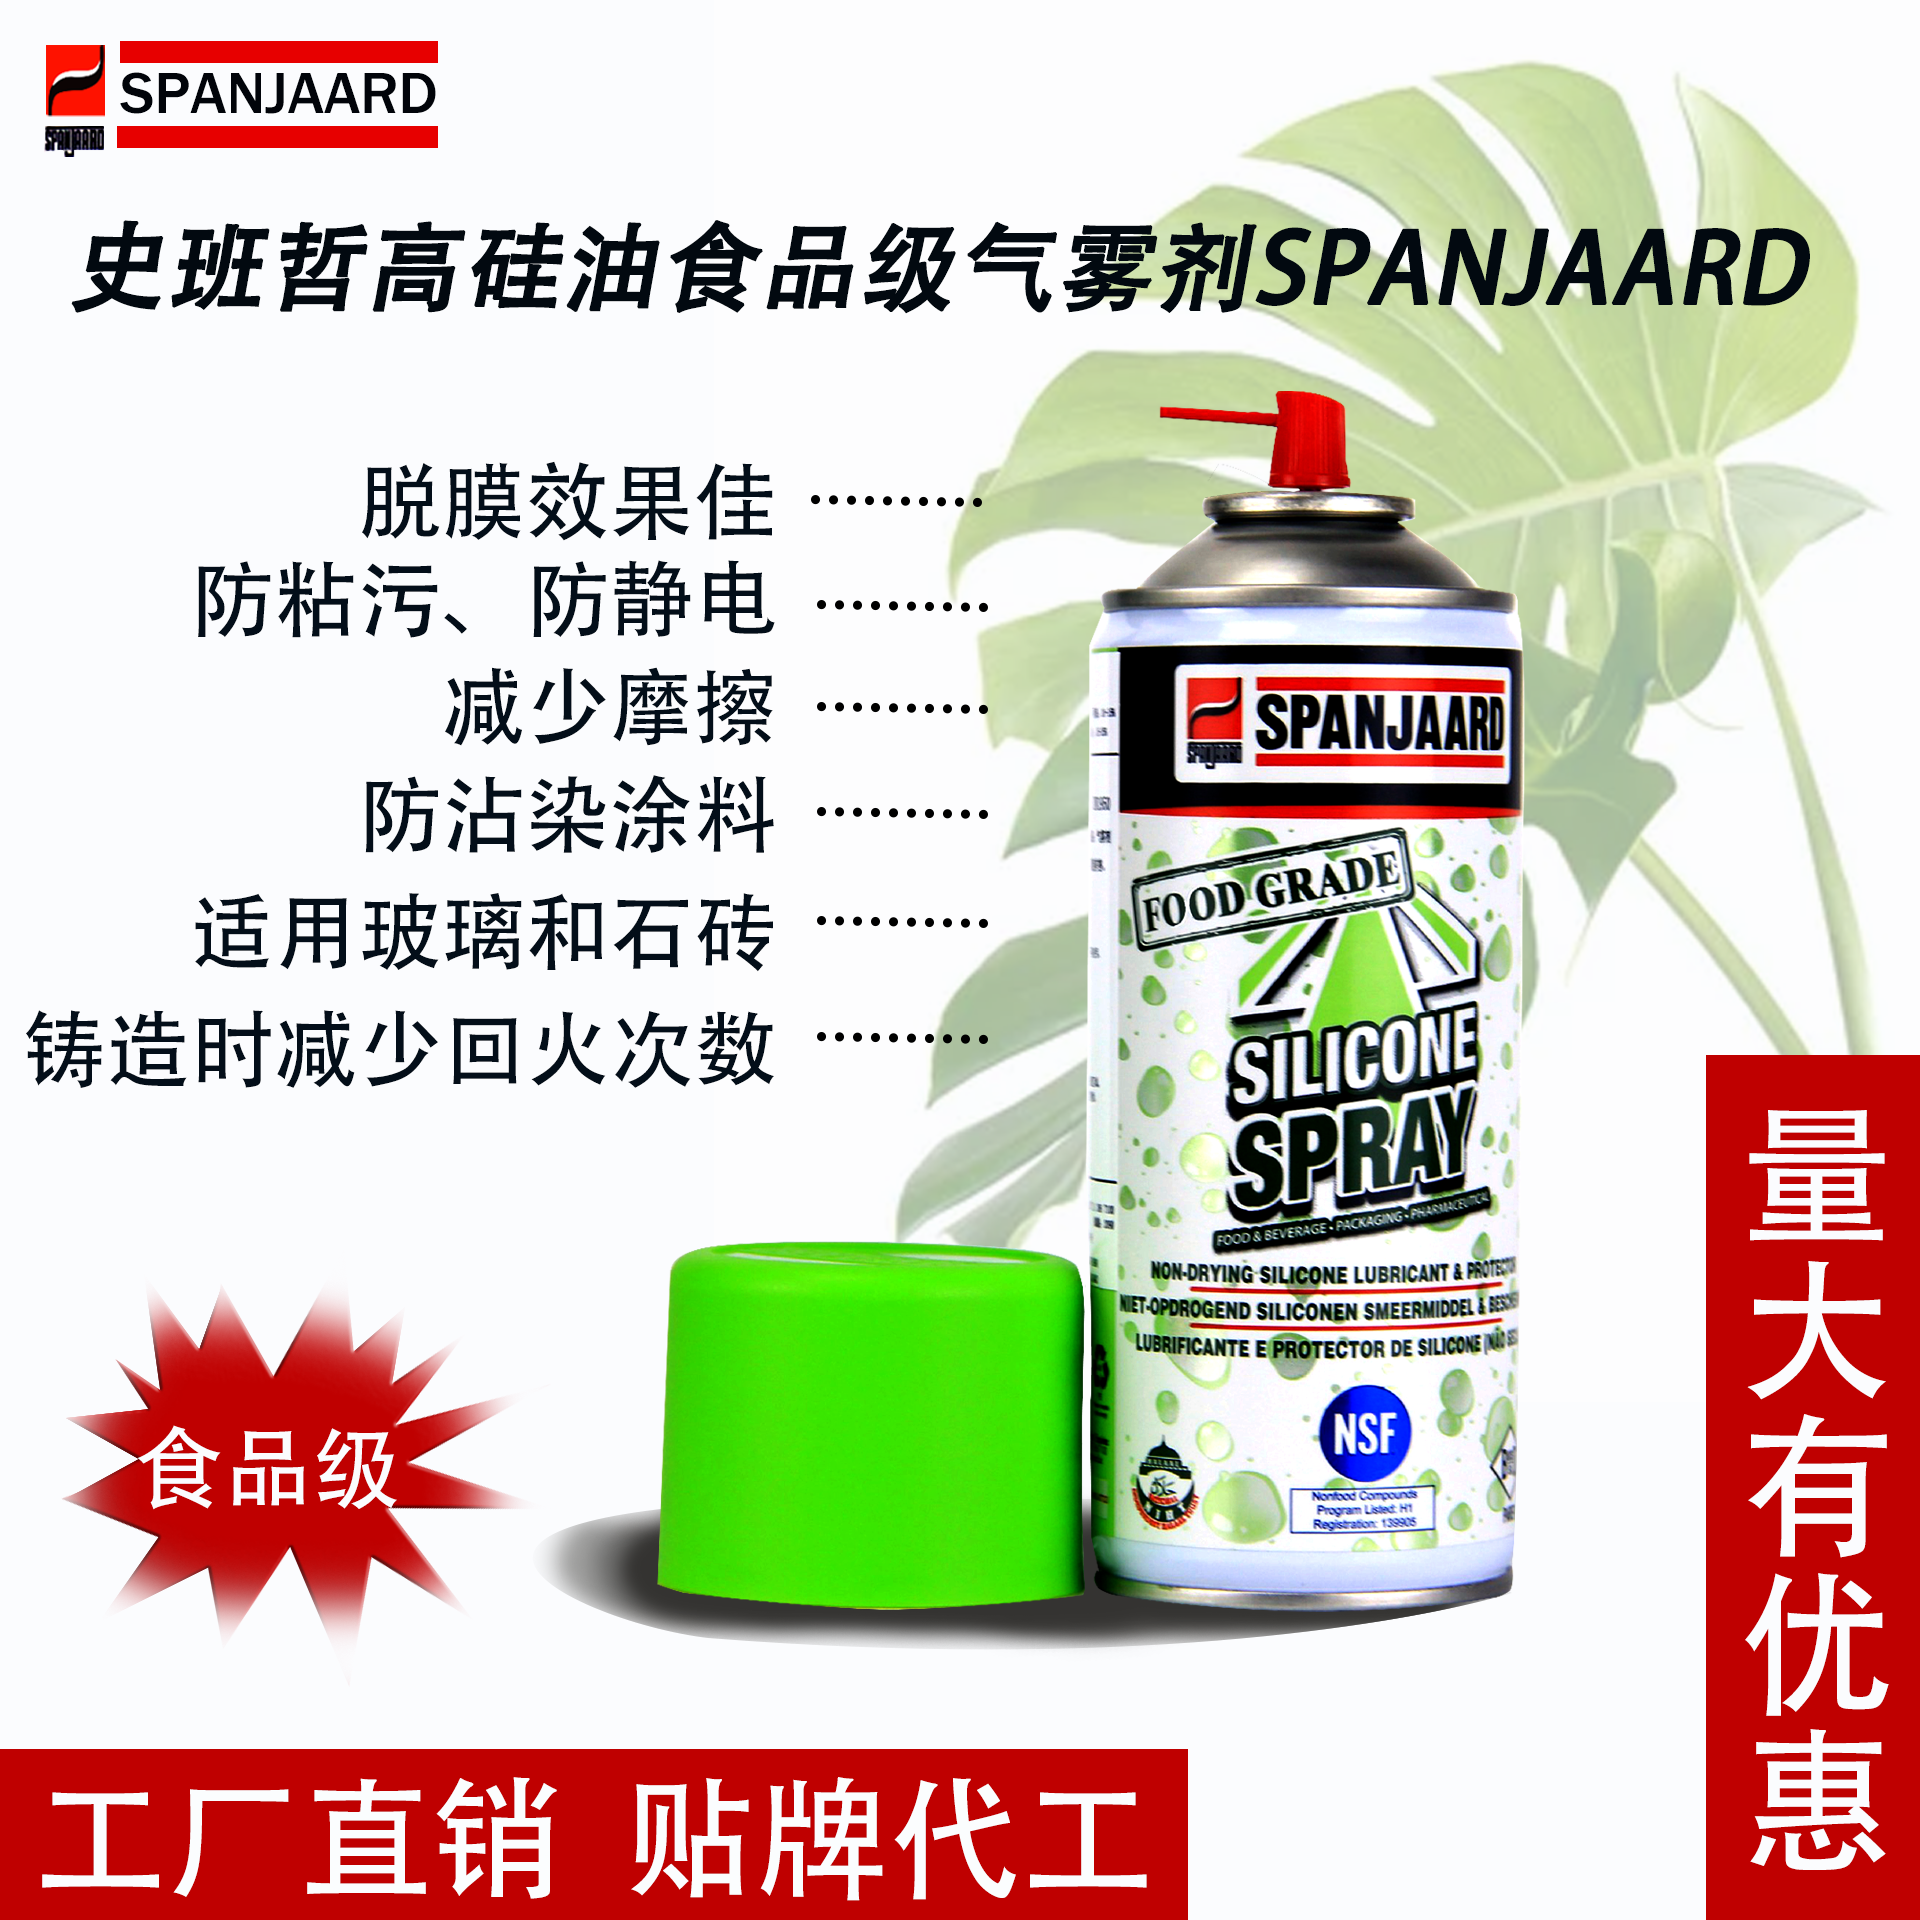 史班哲高效硅油食品级气雾剂SILICONE SPRAY（硅油喷剂）脱模剂